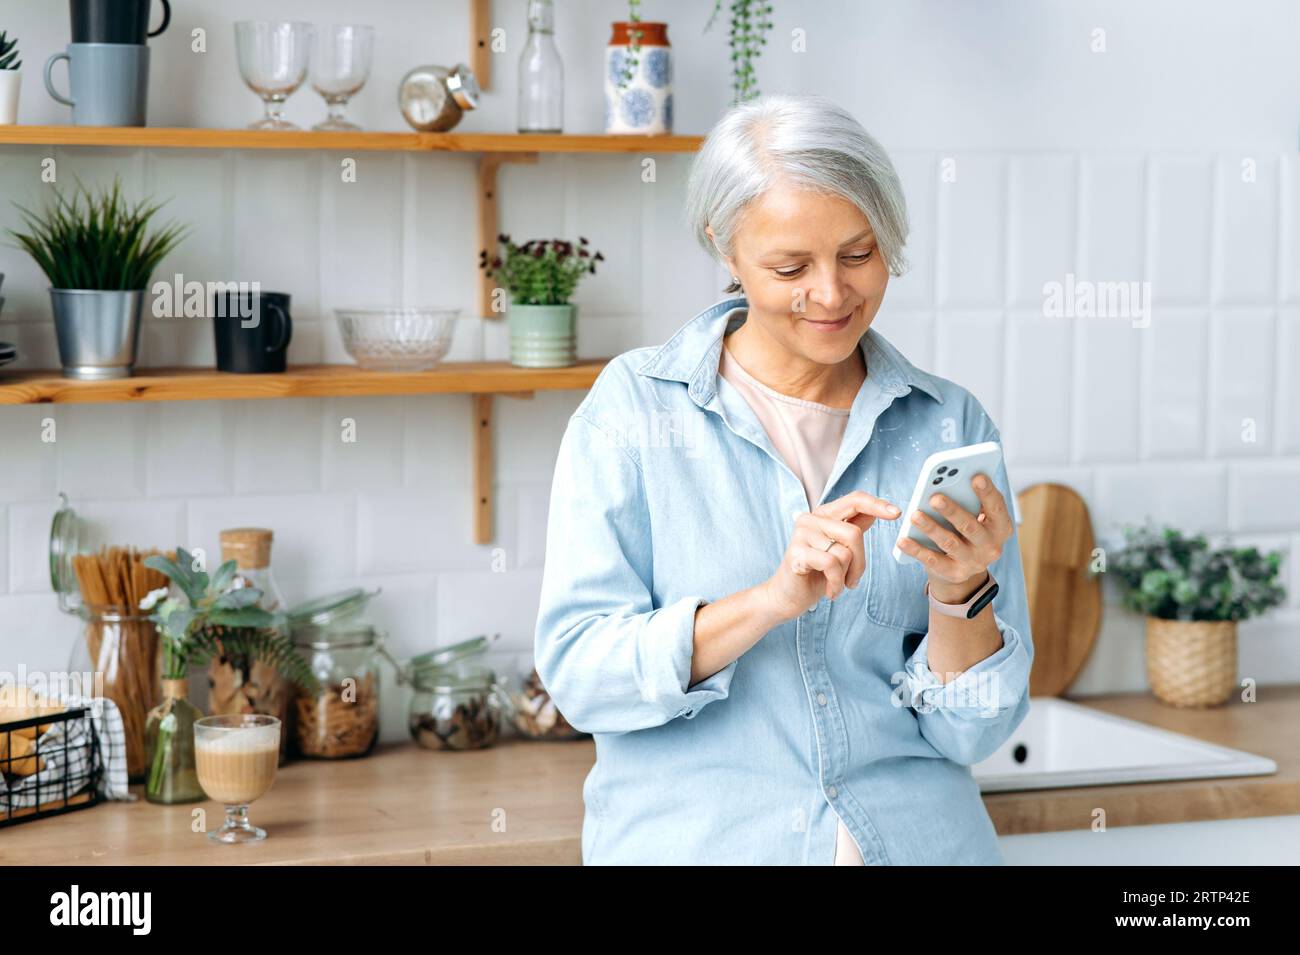 Erstaunliche moderne, weiße, reife, grauhaarige Frau, steht zu Hause in der Küche, hält ihr Smartphone in der Hand, benutzt es, um in sozialen Netzwerken zu kommunizieren, Nachrichten zu lesen, im Internet zu surfen, zu lächeln Stockfoto